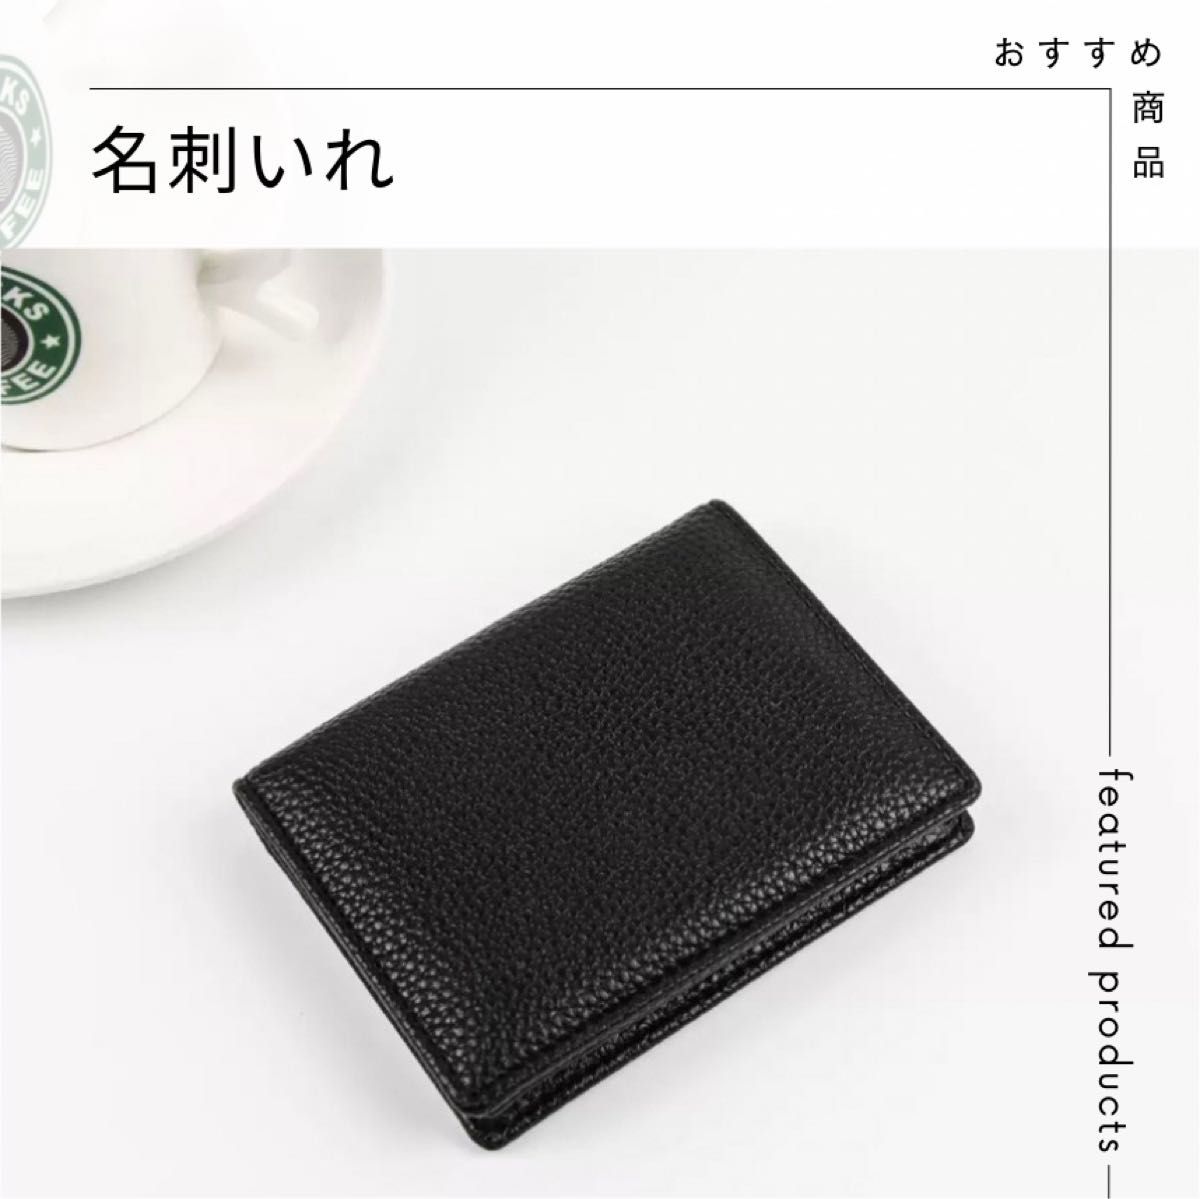 【黒】 新品 未使用 人気 カードケース 名刺入れ ビジネス スマート 本革